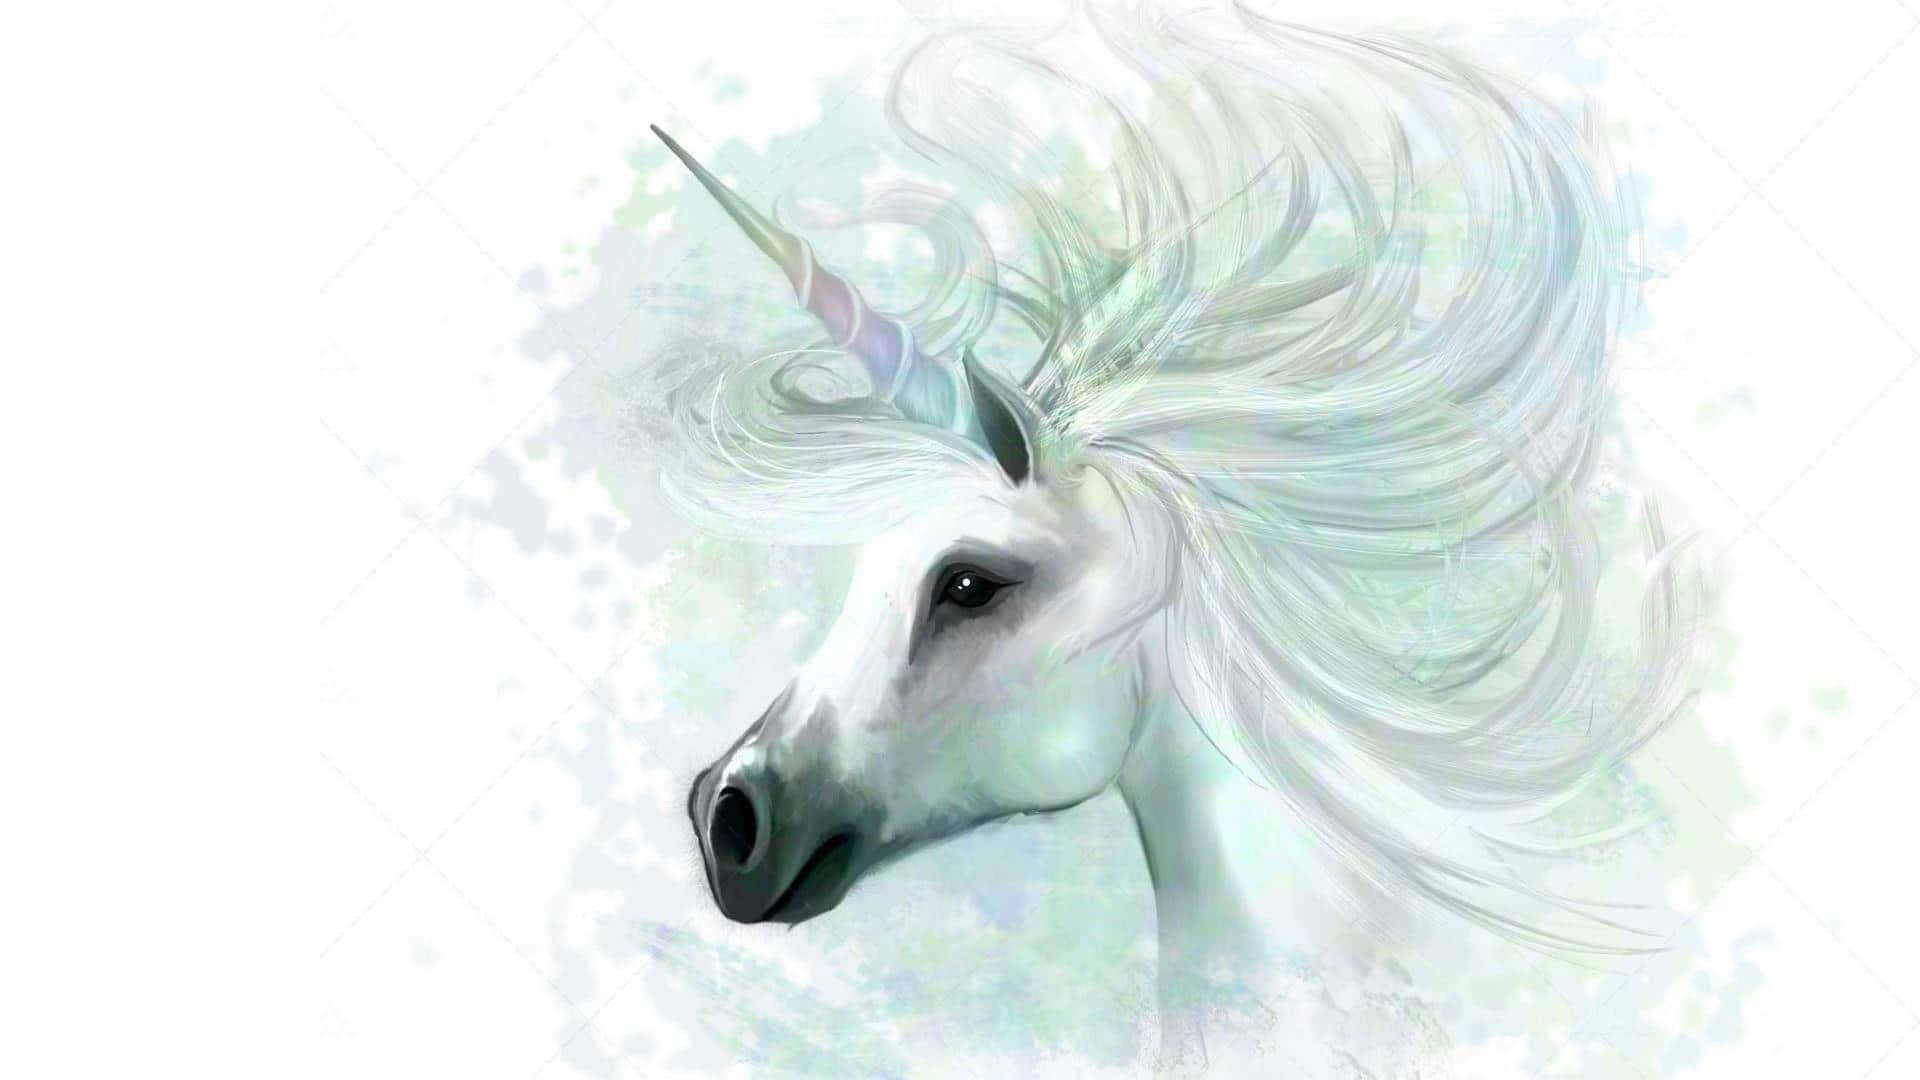 Adéntrateen El Mágico Mundo De Fantasía De Los Unicornios Con Este Fondo De Pantalla Para Escritorio. Fondo de pantalla